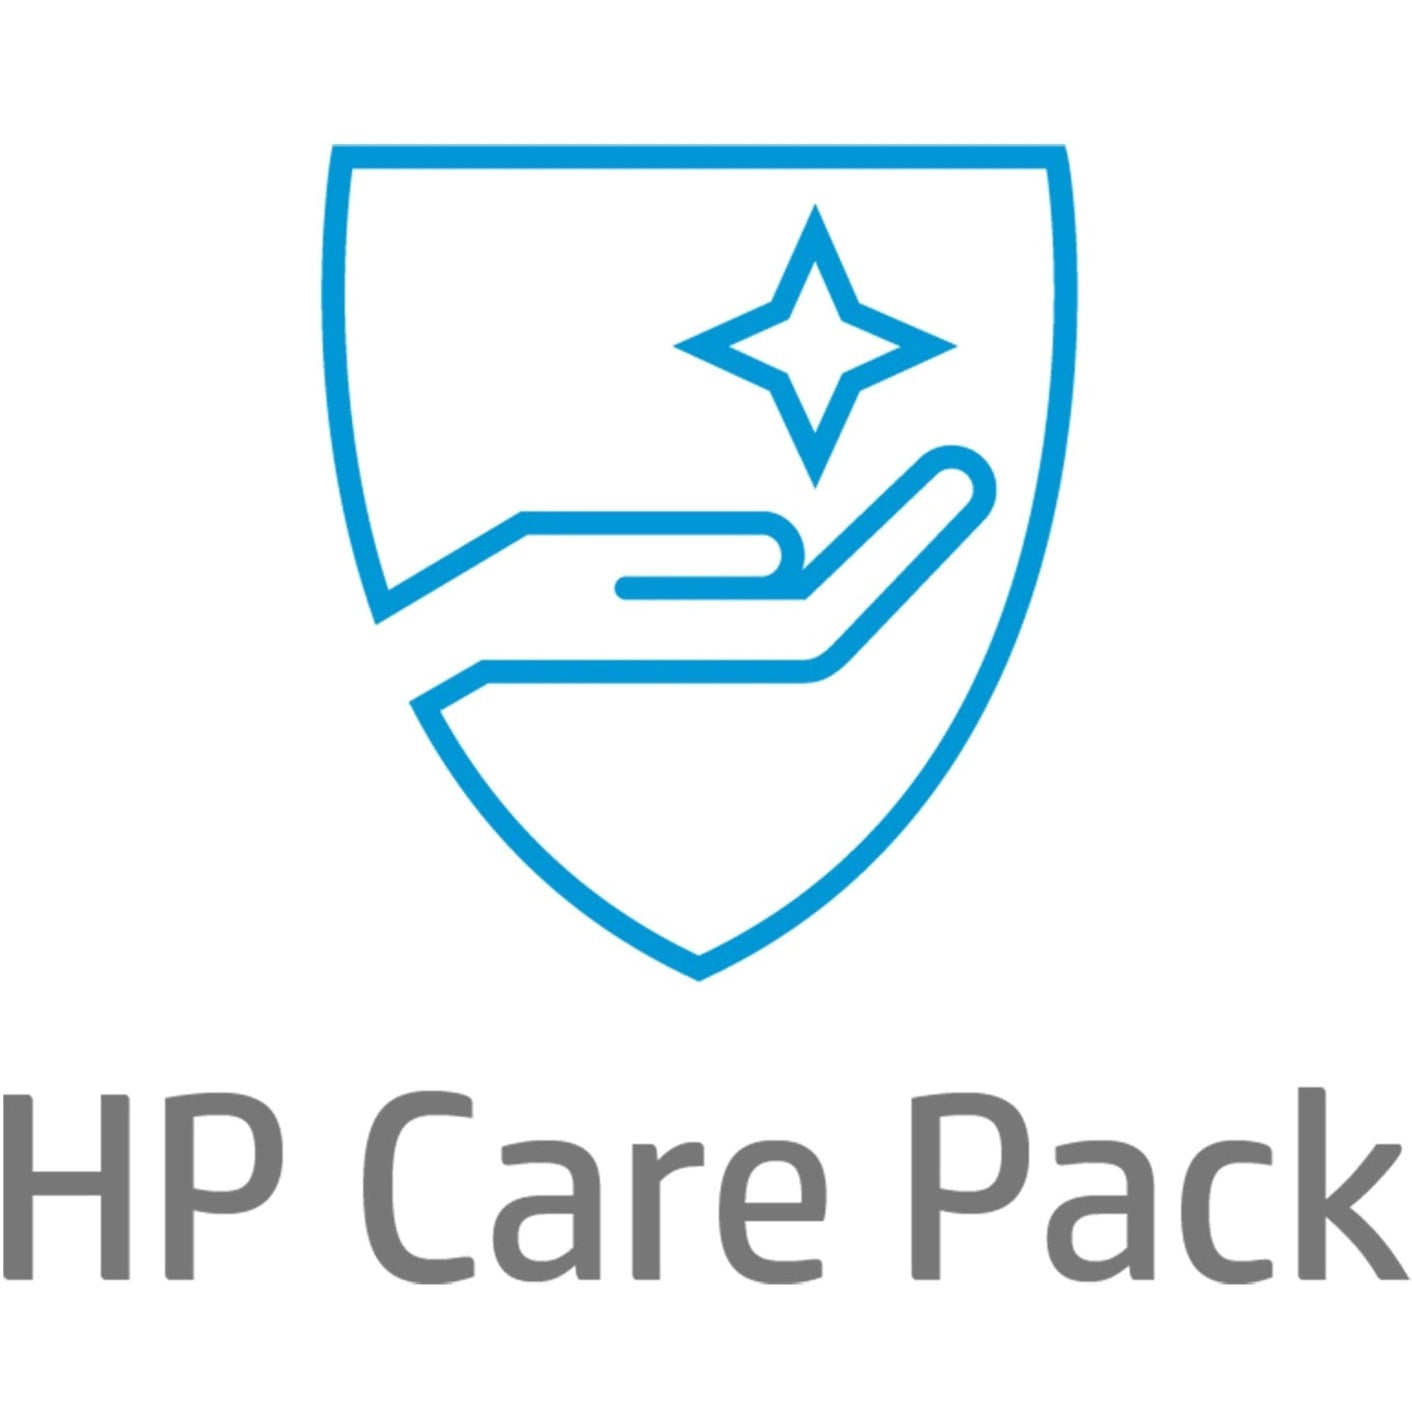 HP Care Pack - 4 Year - Service (U7863E)